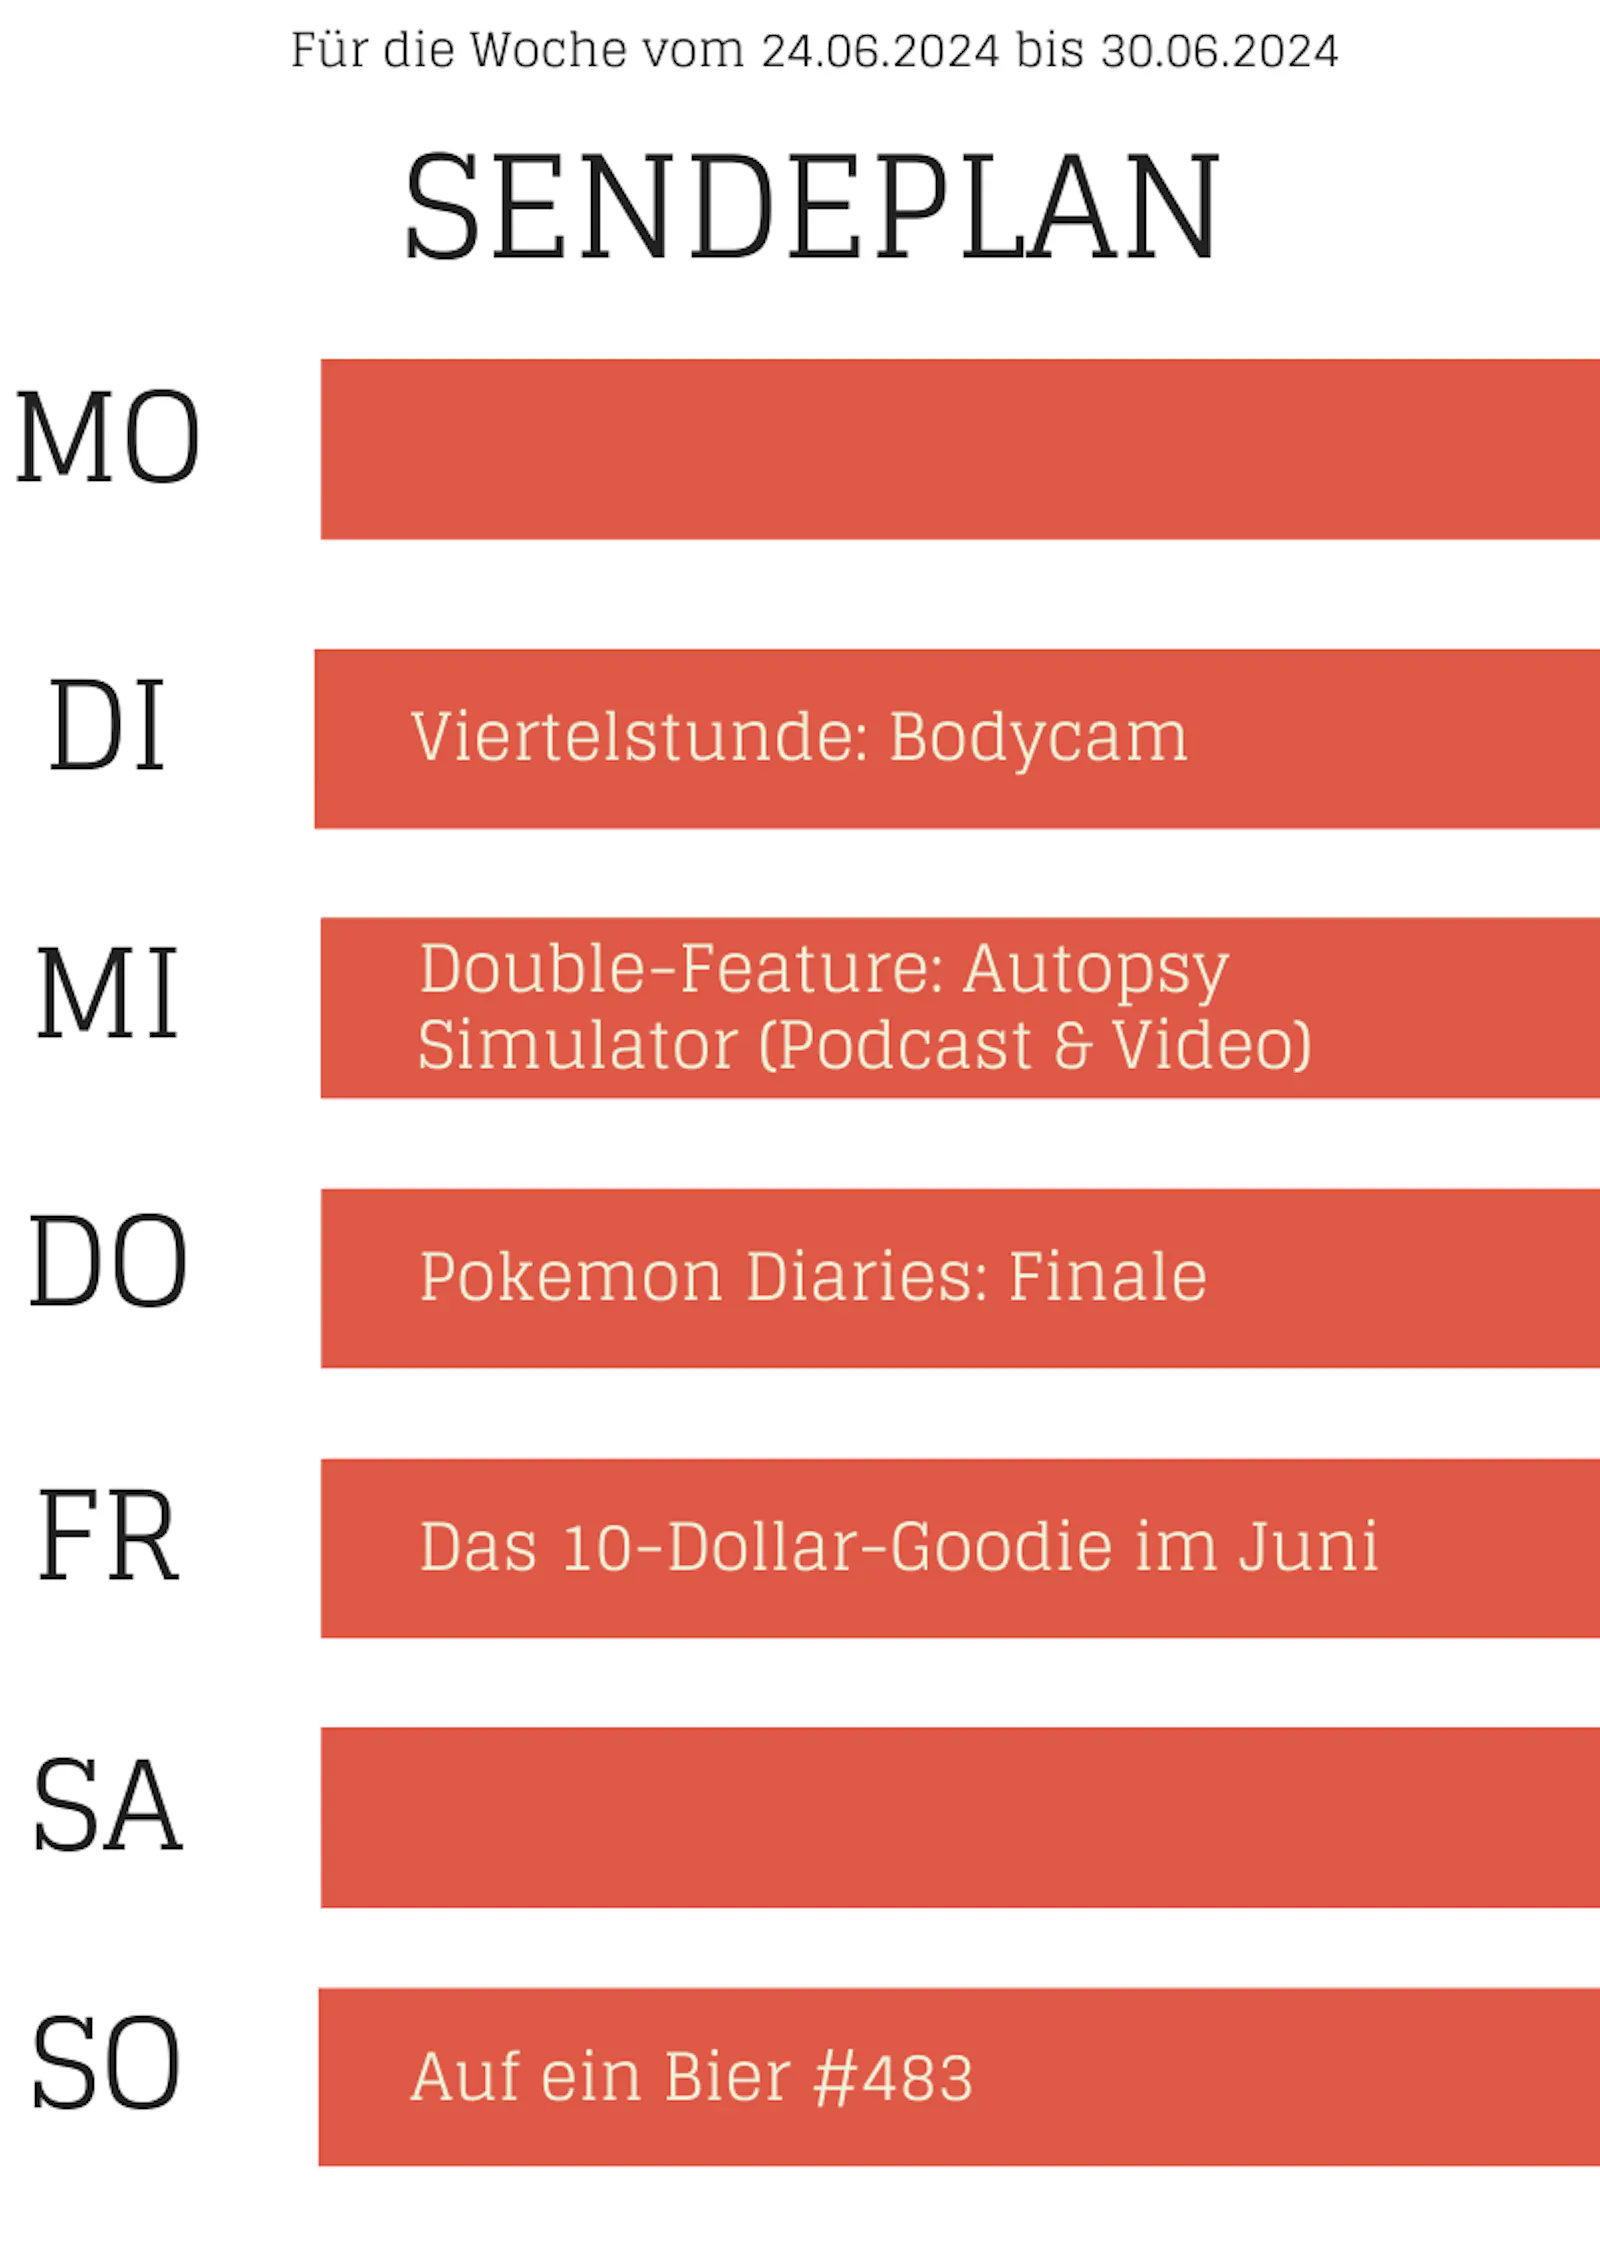 Plan 24.-30-6.2024
DI Viertelstunde Bodycam
MI Autopsy Simulator - Podcast & Video
DO Pokémon DIaries Finale
FR 10-$-Goodie
SO Auf ein Bier #483